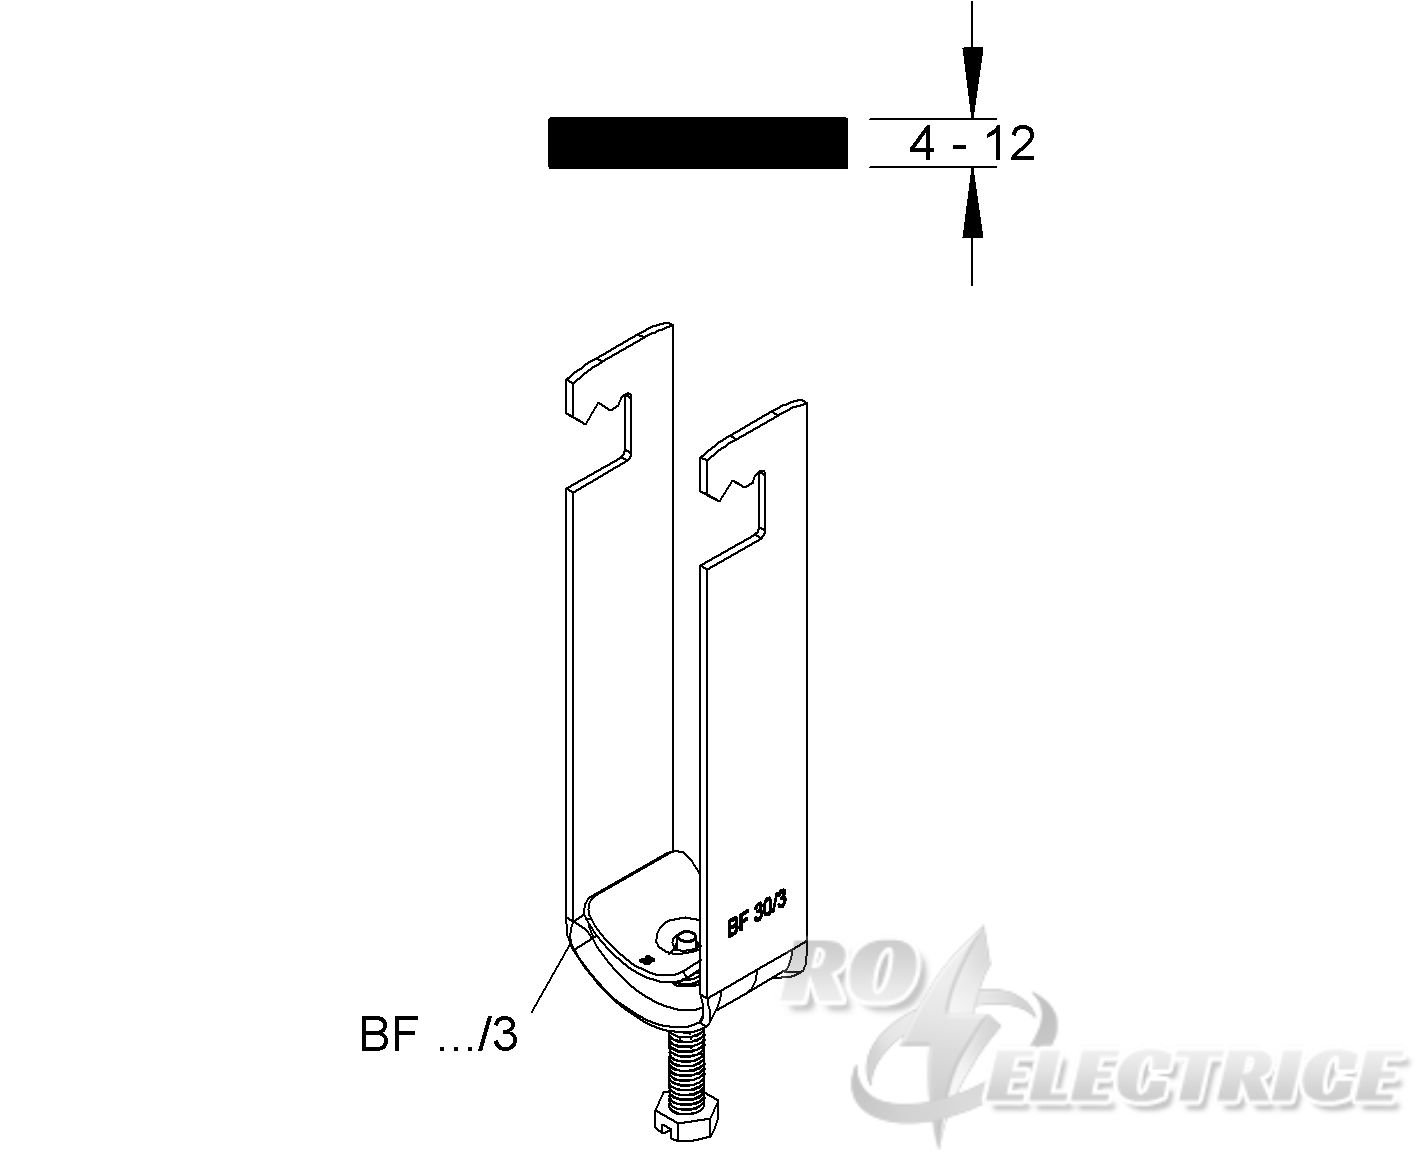 Bügelschelle, für Flacheisen 4-12 mm, für 3 Kabel, Ø 20-22mm, Stahl, feuerverzinkt DIN EN ISO 1461, mit Stahldruckwanne